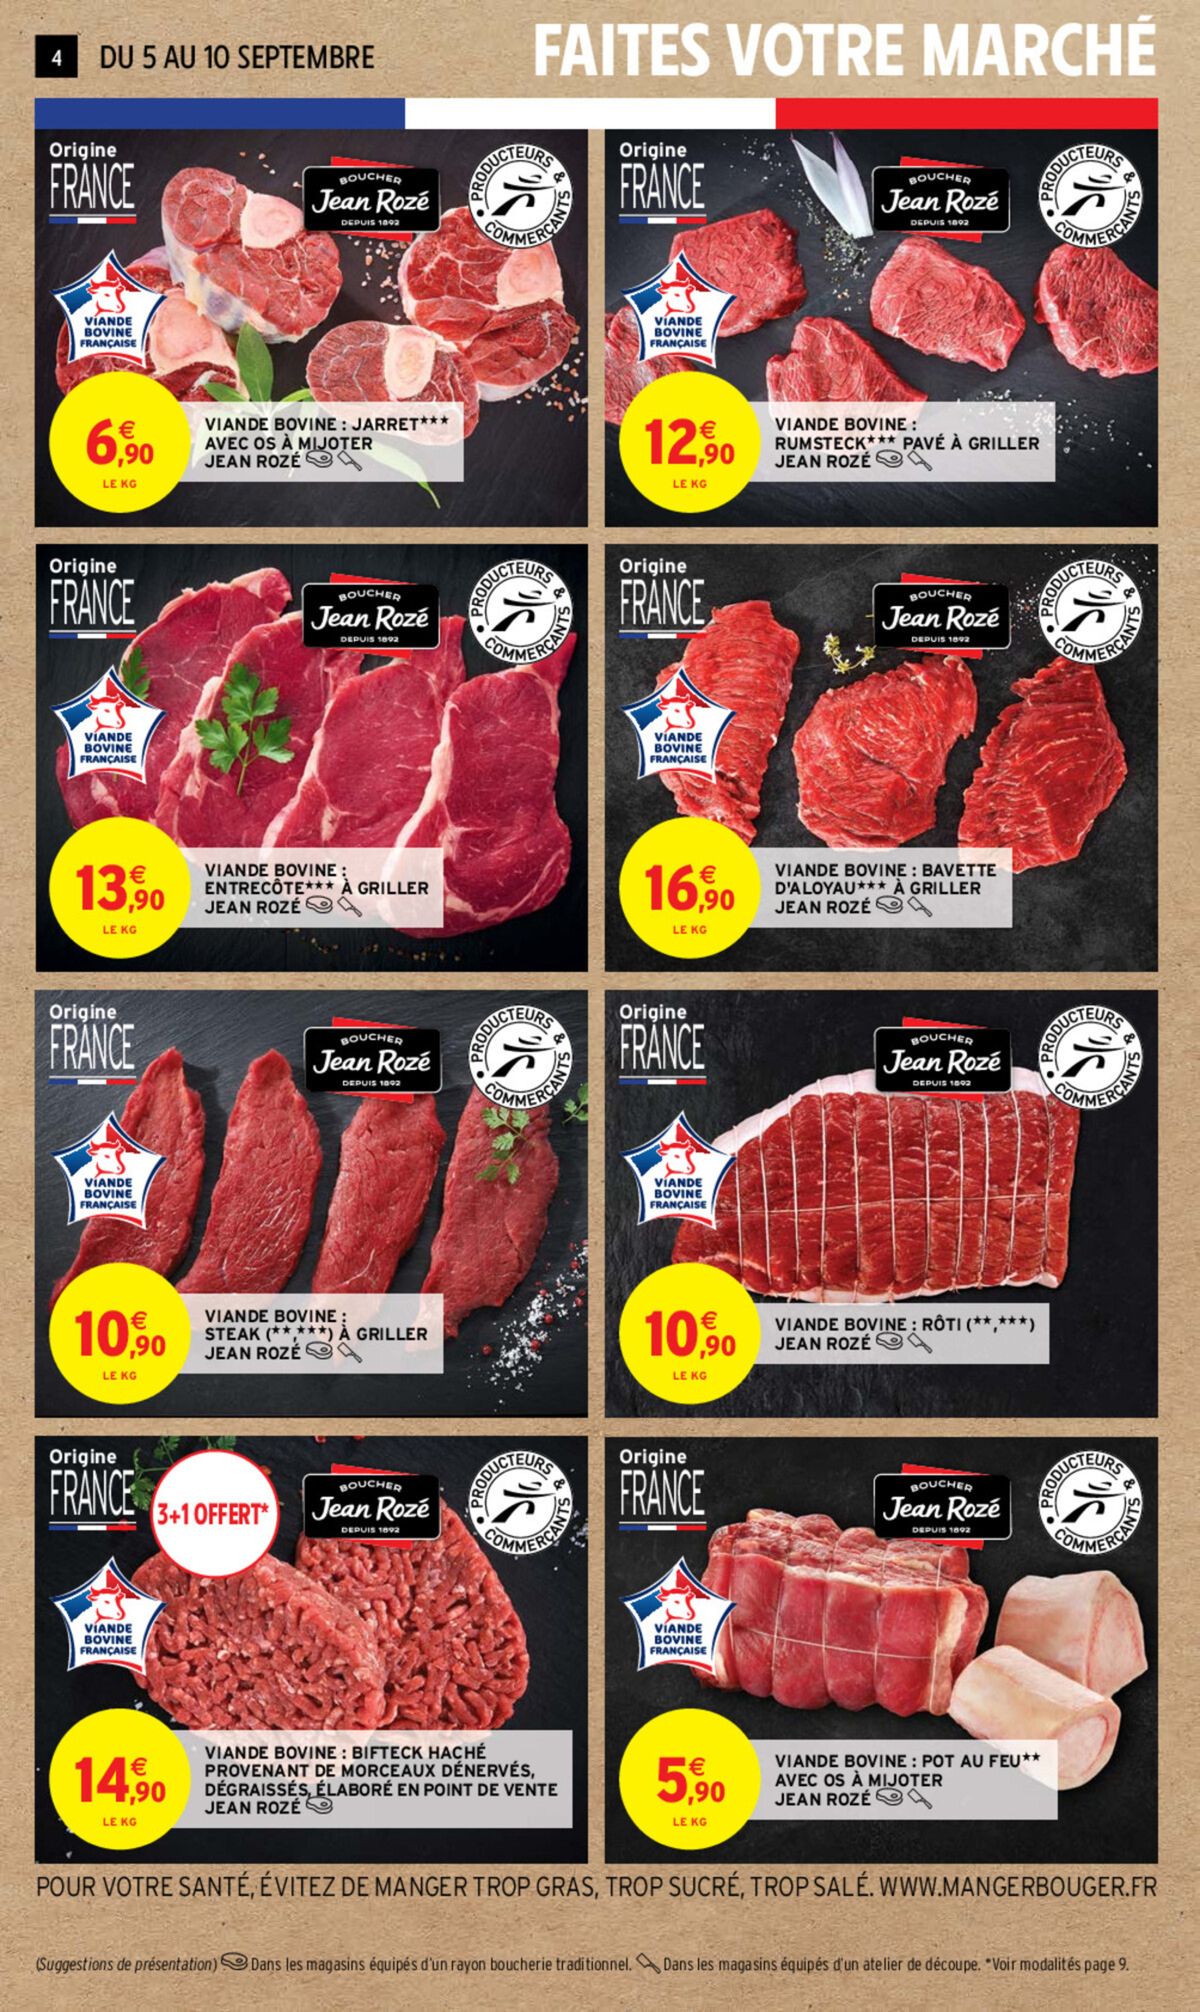 Catalogue Foire à la viande, page 00004